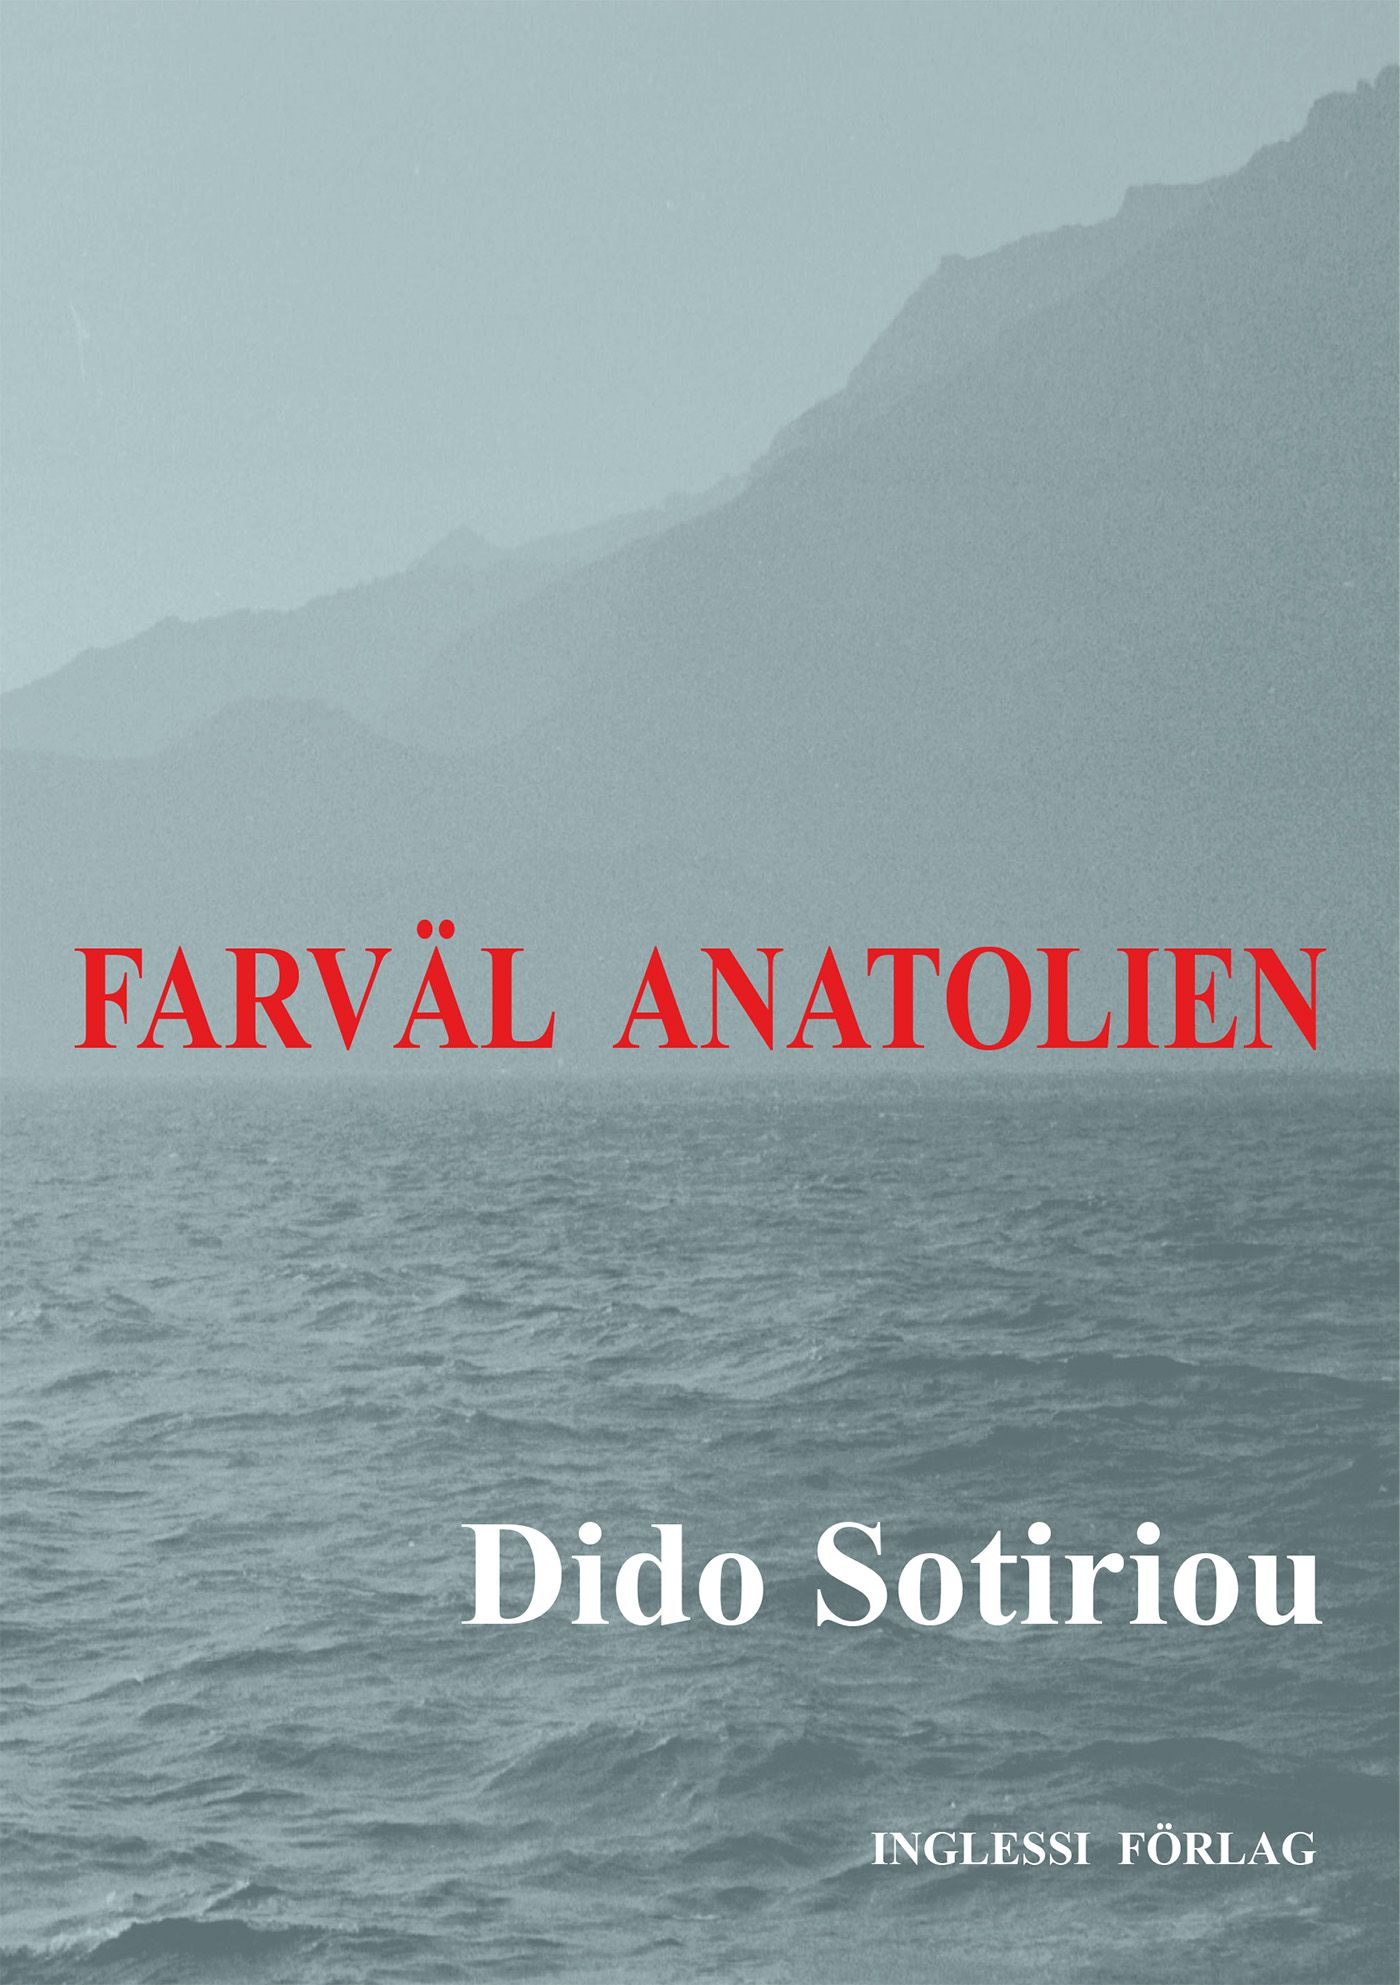 Farväl Anatolien, eBook by Dido Sotiriou